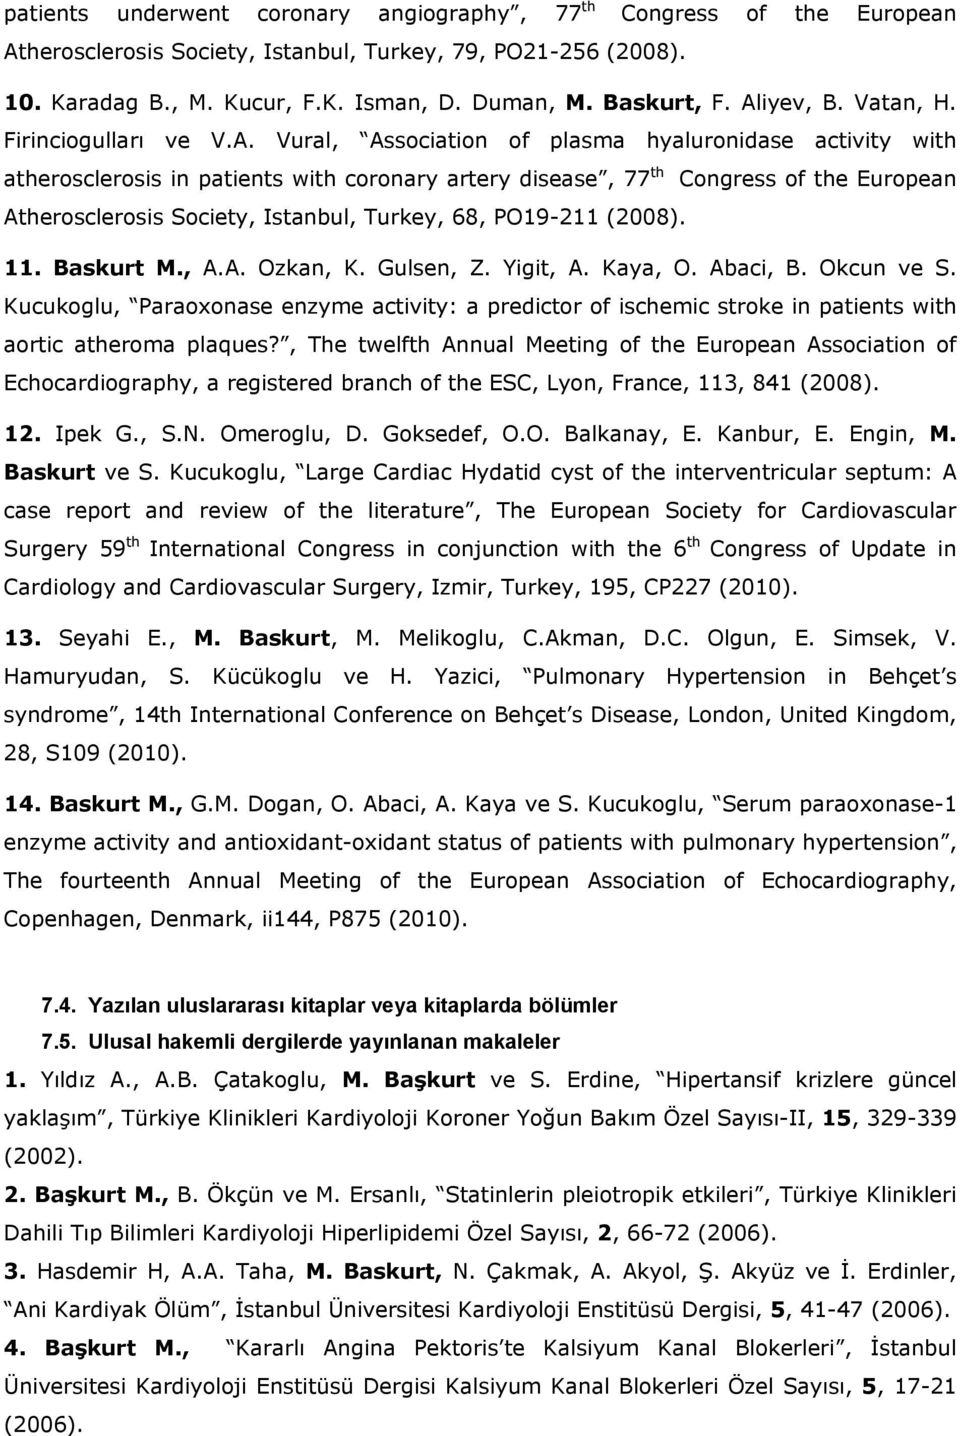 Atherosclerosis Society, Istanbul, Turkey, 68, PO19-211 (2008). 11. Baskurt M., A.A. Ozkan, K. Gulsen, Z. Yigit, A. Kaya, O. Abaci, B. Okcun ve S.